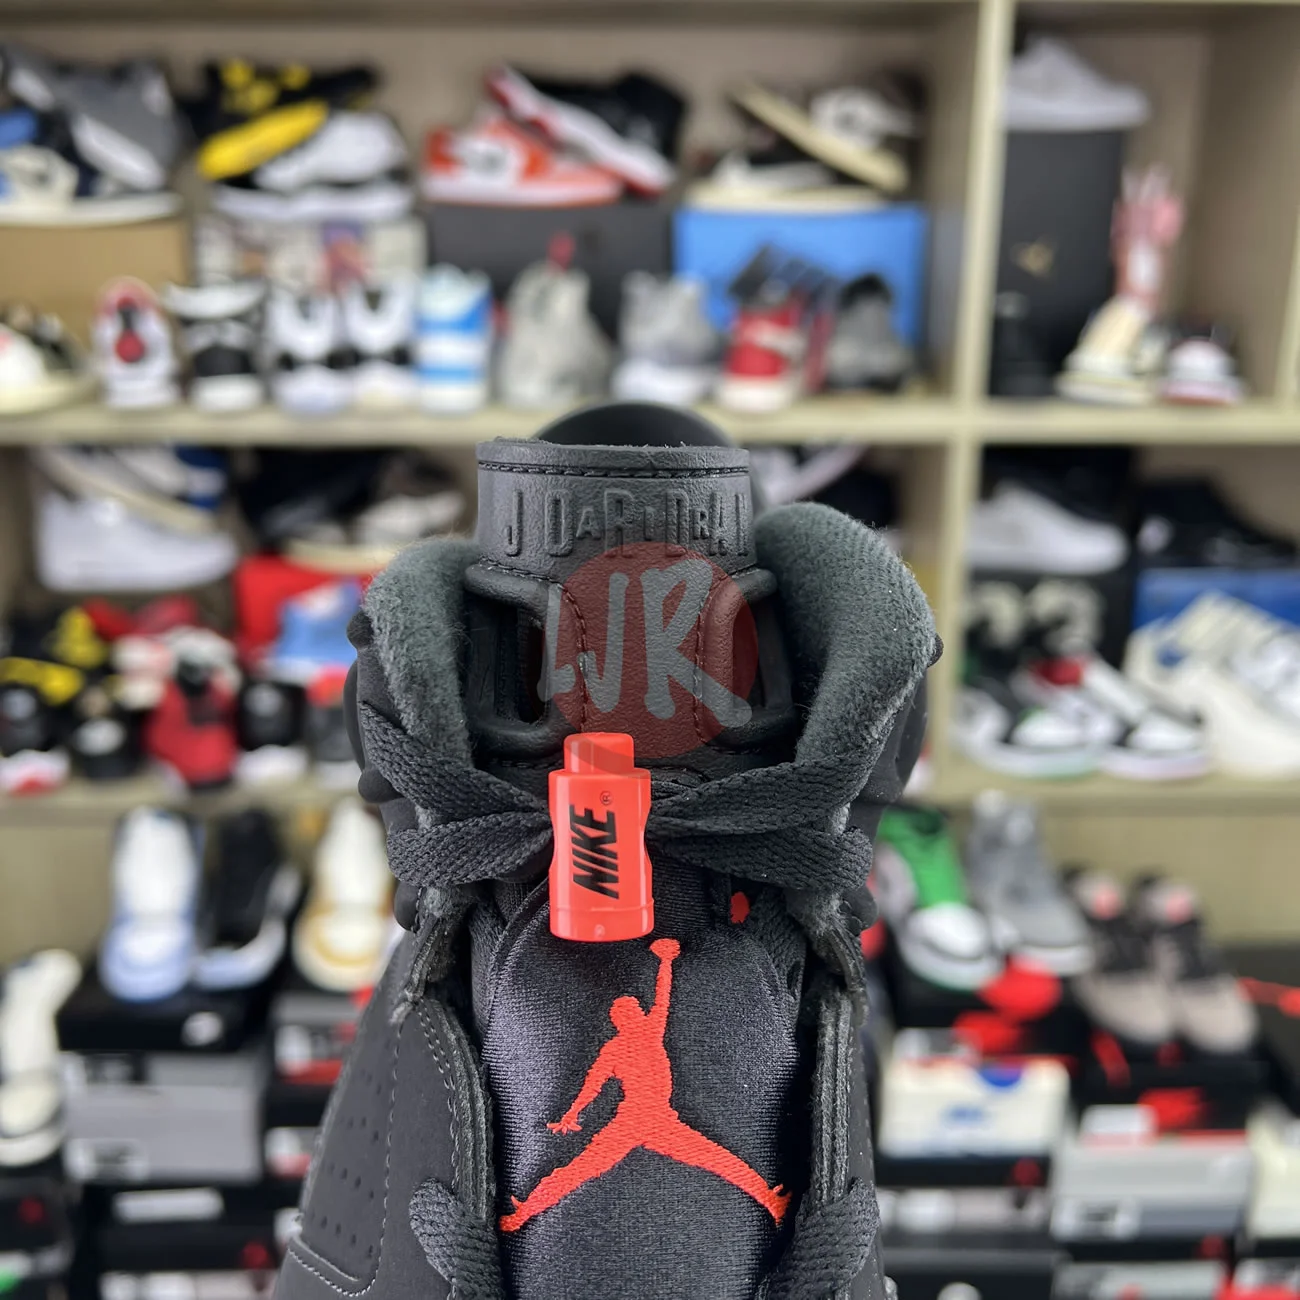 Air Jordan 6 Retro Black Infrared 2019 384664 060 Ljr Sneakers (7) - bc-ljr.com